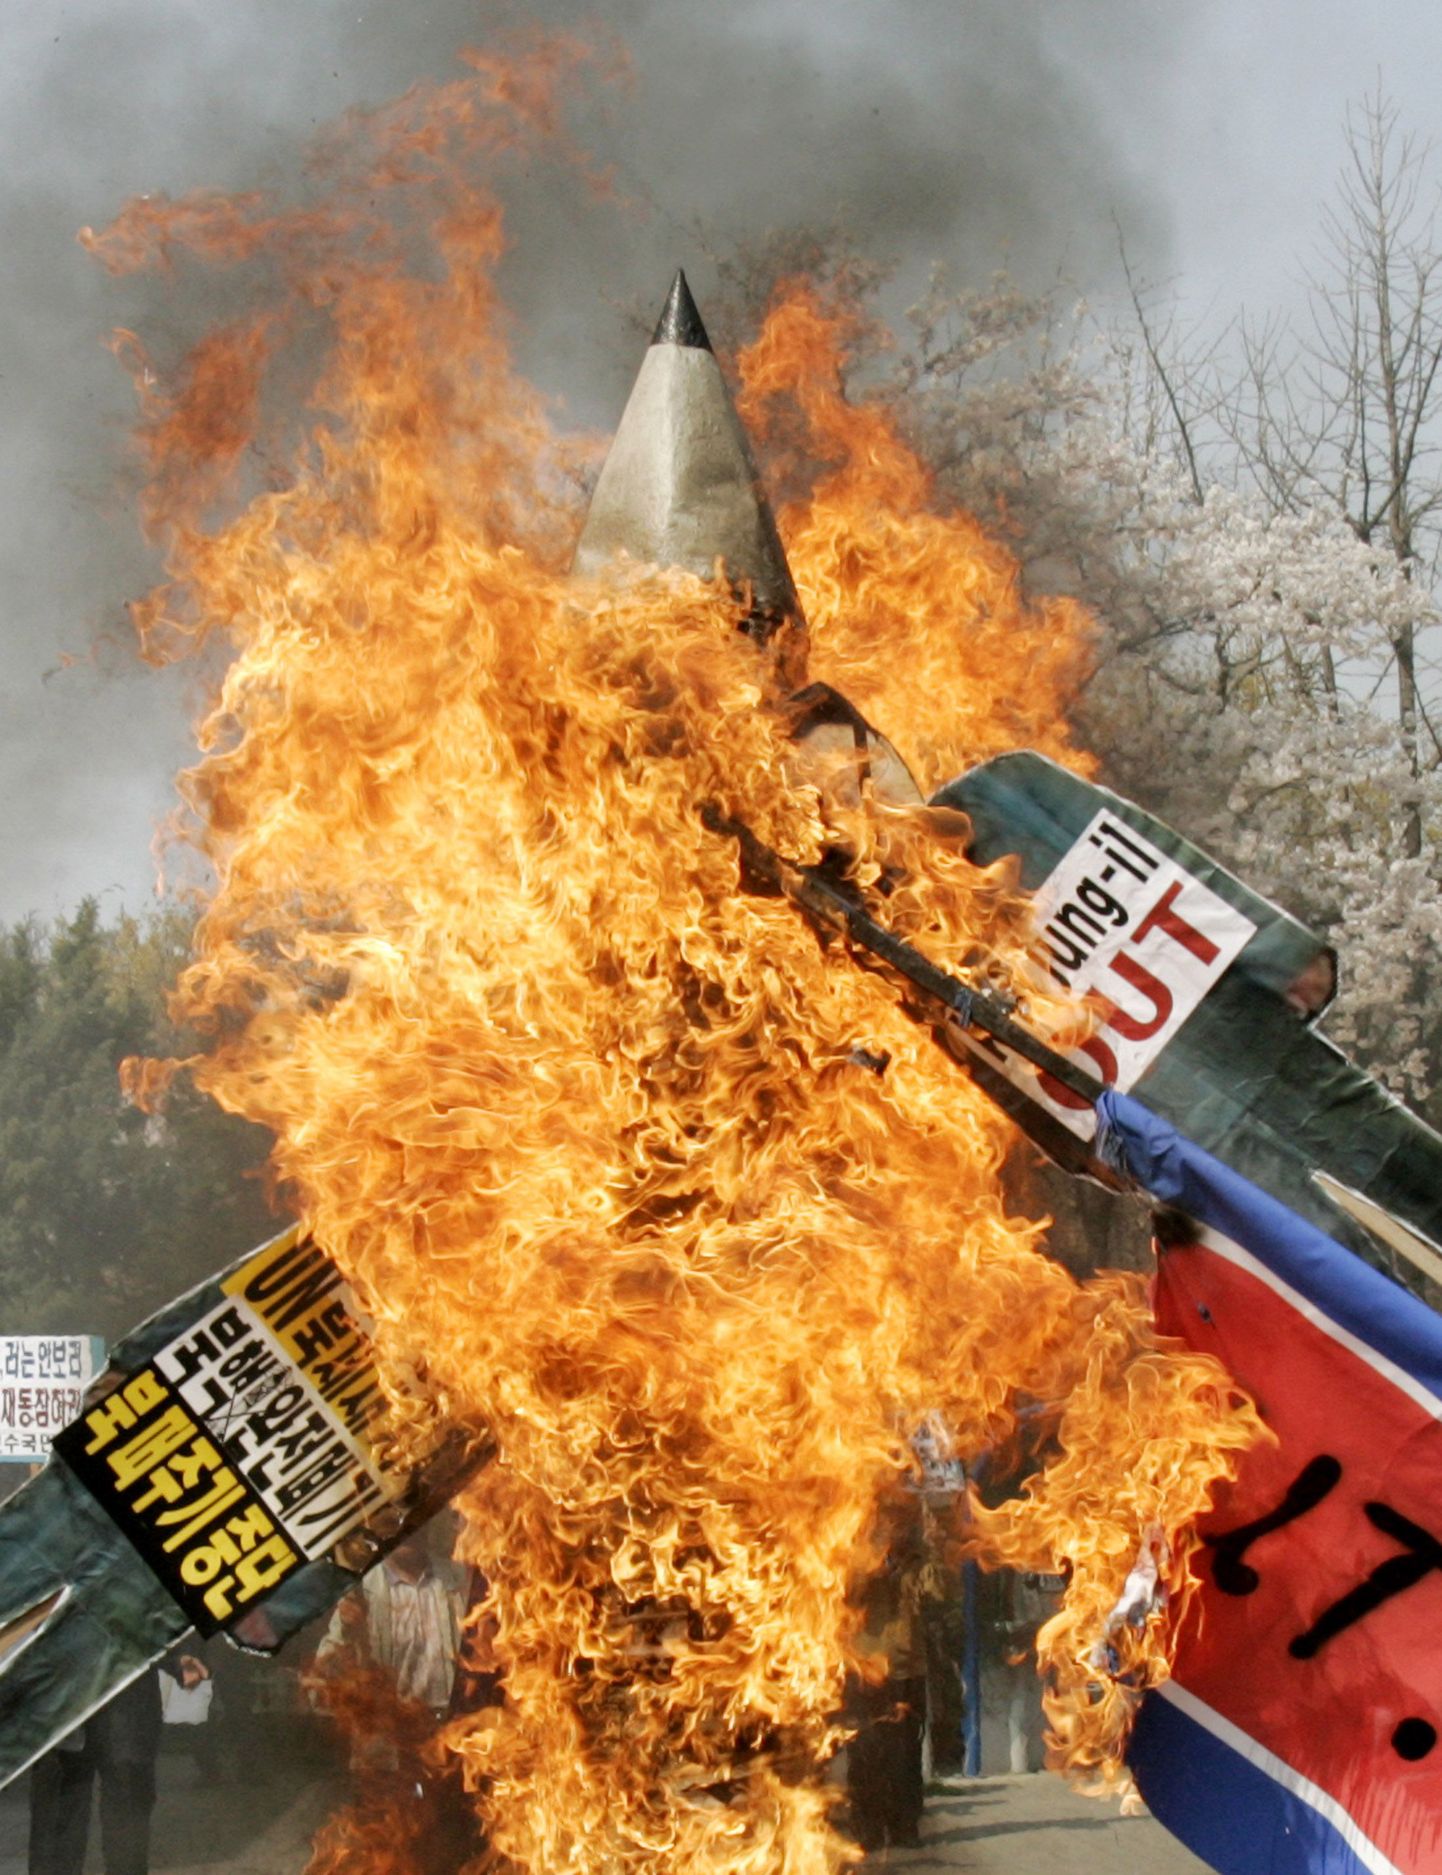 Lõuna-Koreas põletati protestiks naaberriigi raketistardi vastu mängurakette.